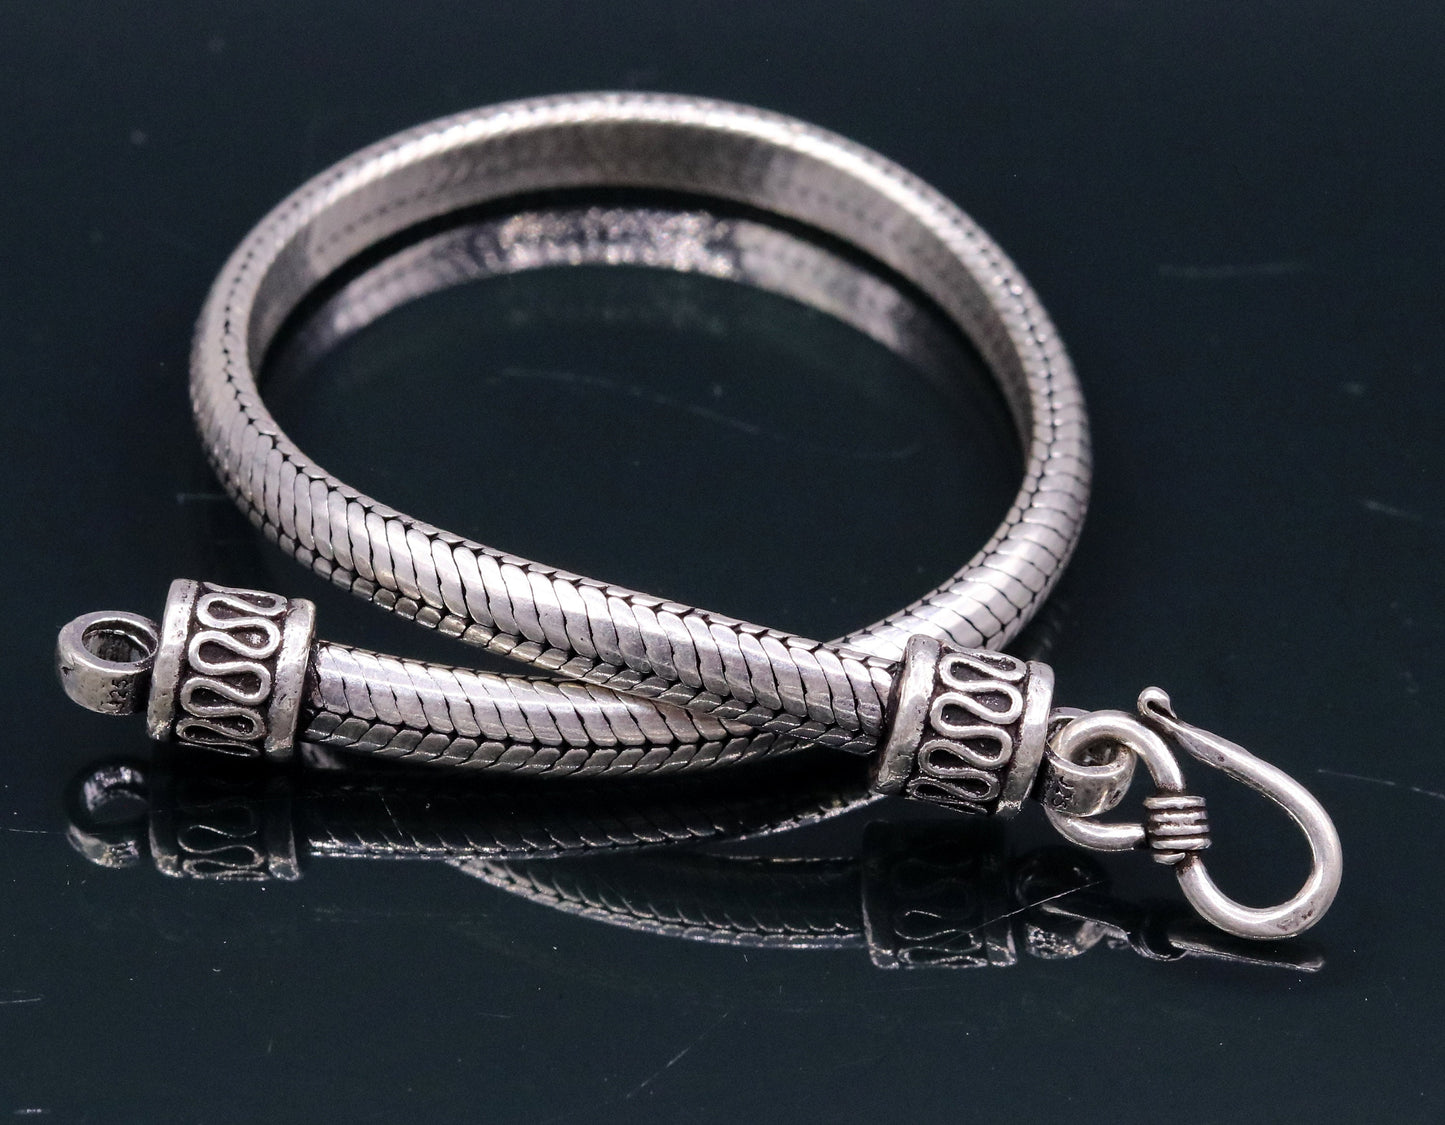 8" inches 9mm 25 sterling silver handmade snake chain bracelet D shape Customized bracelet half round snake chain bracelet unisex sbr148 - TRIBAL ORNAMENTS